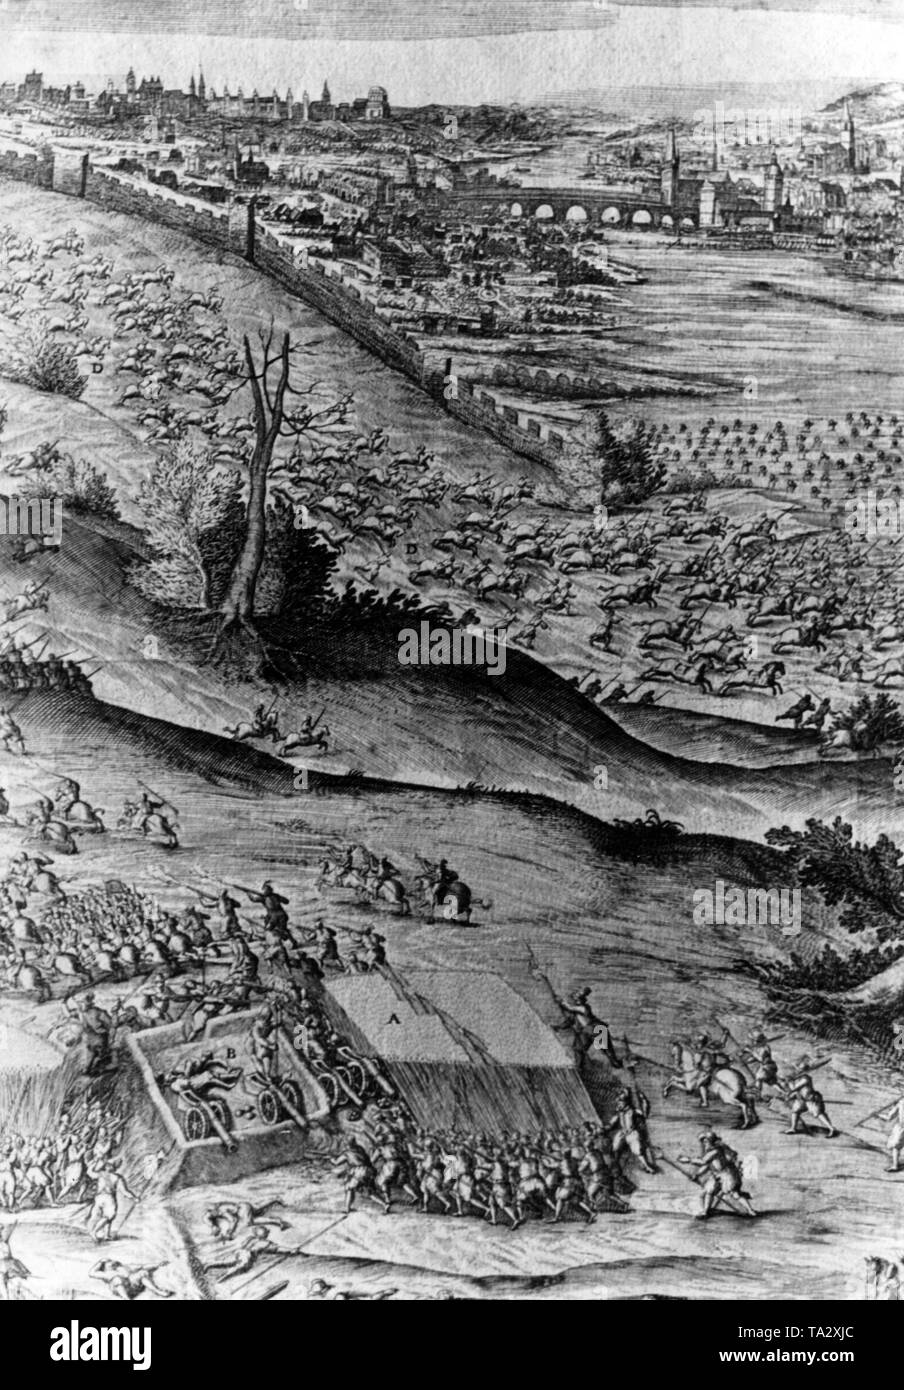 Eingeschränkte Sicht auf einem Stich von sadeler. In dieser Schlacht, die protestantische Armee unter Friedrich V. von der Pfalz, der sogenannten 'Winter King', besiegt durch die Truppen der Katholischen Liga unter der Führung von Tilly. Dies war eine wichtige Schlacht in den frühen Phasen des Dreißigjährigen Krieges. Stockfoto